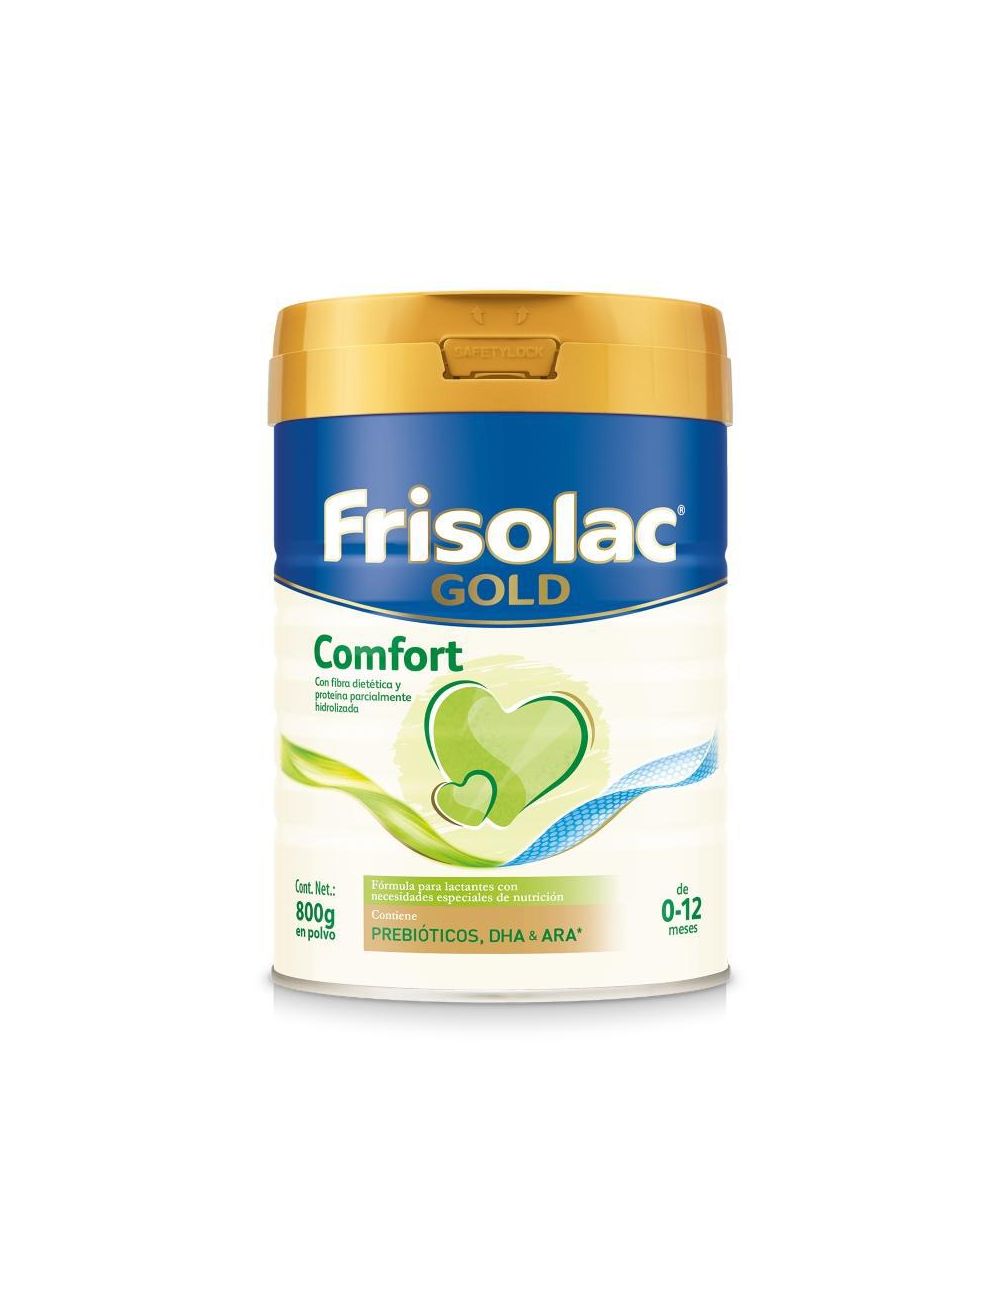 Frisolac Gold Comfort Lata Con 800 g